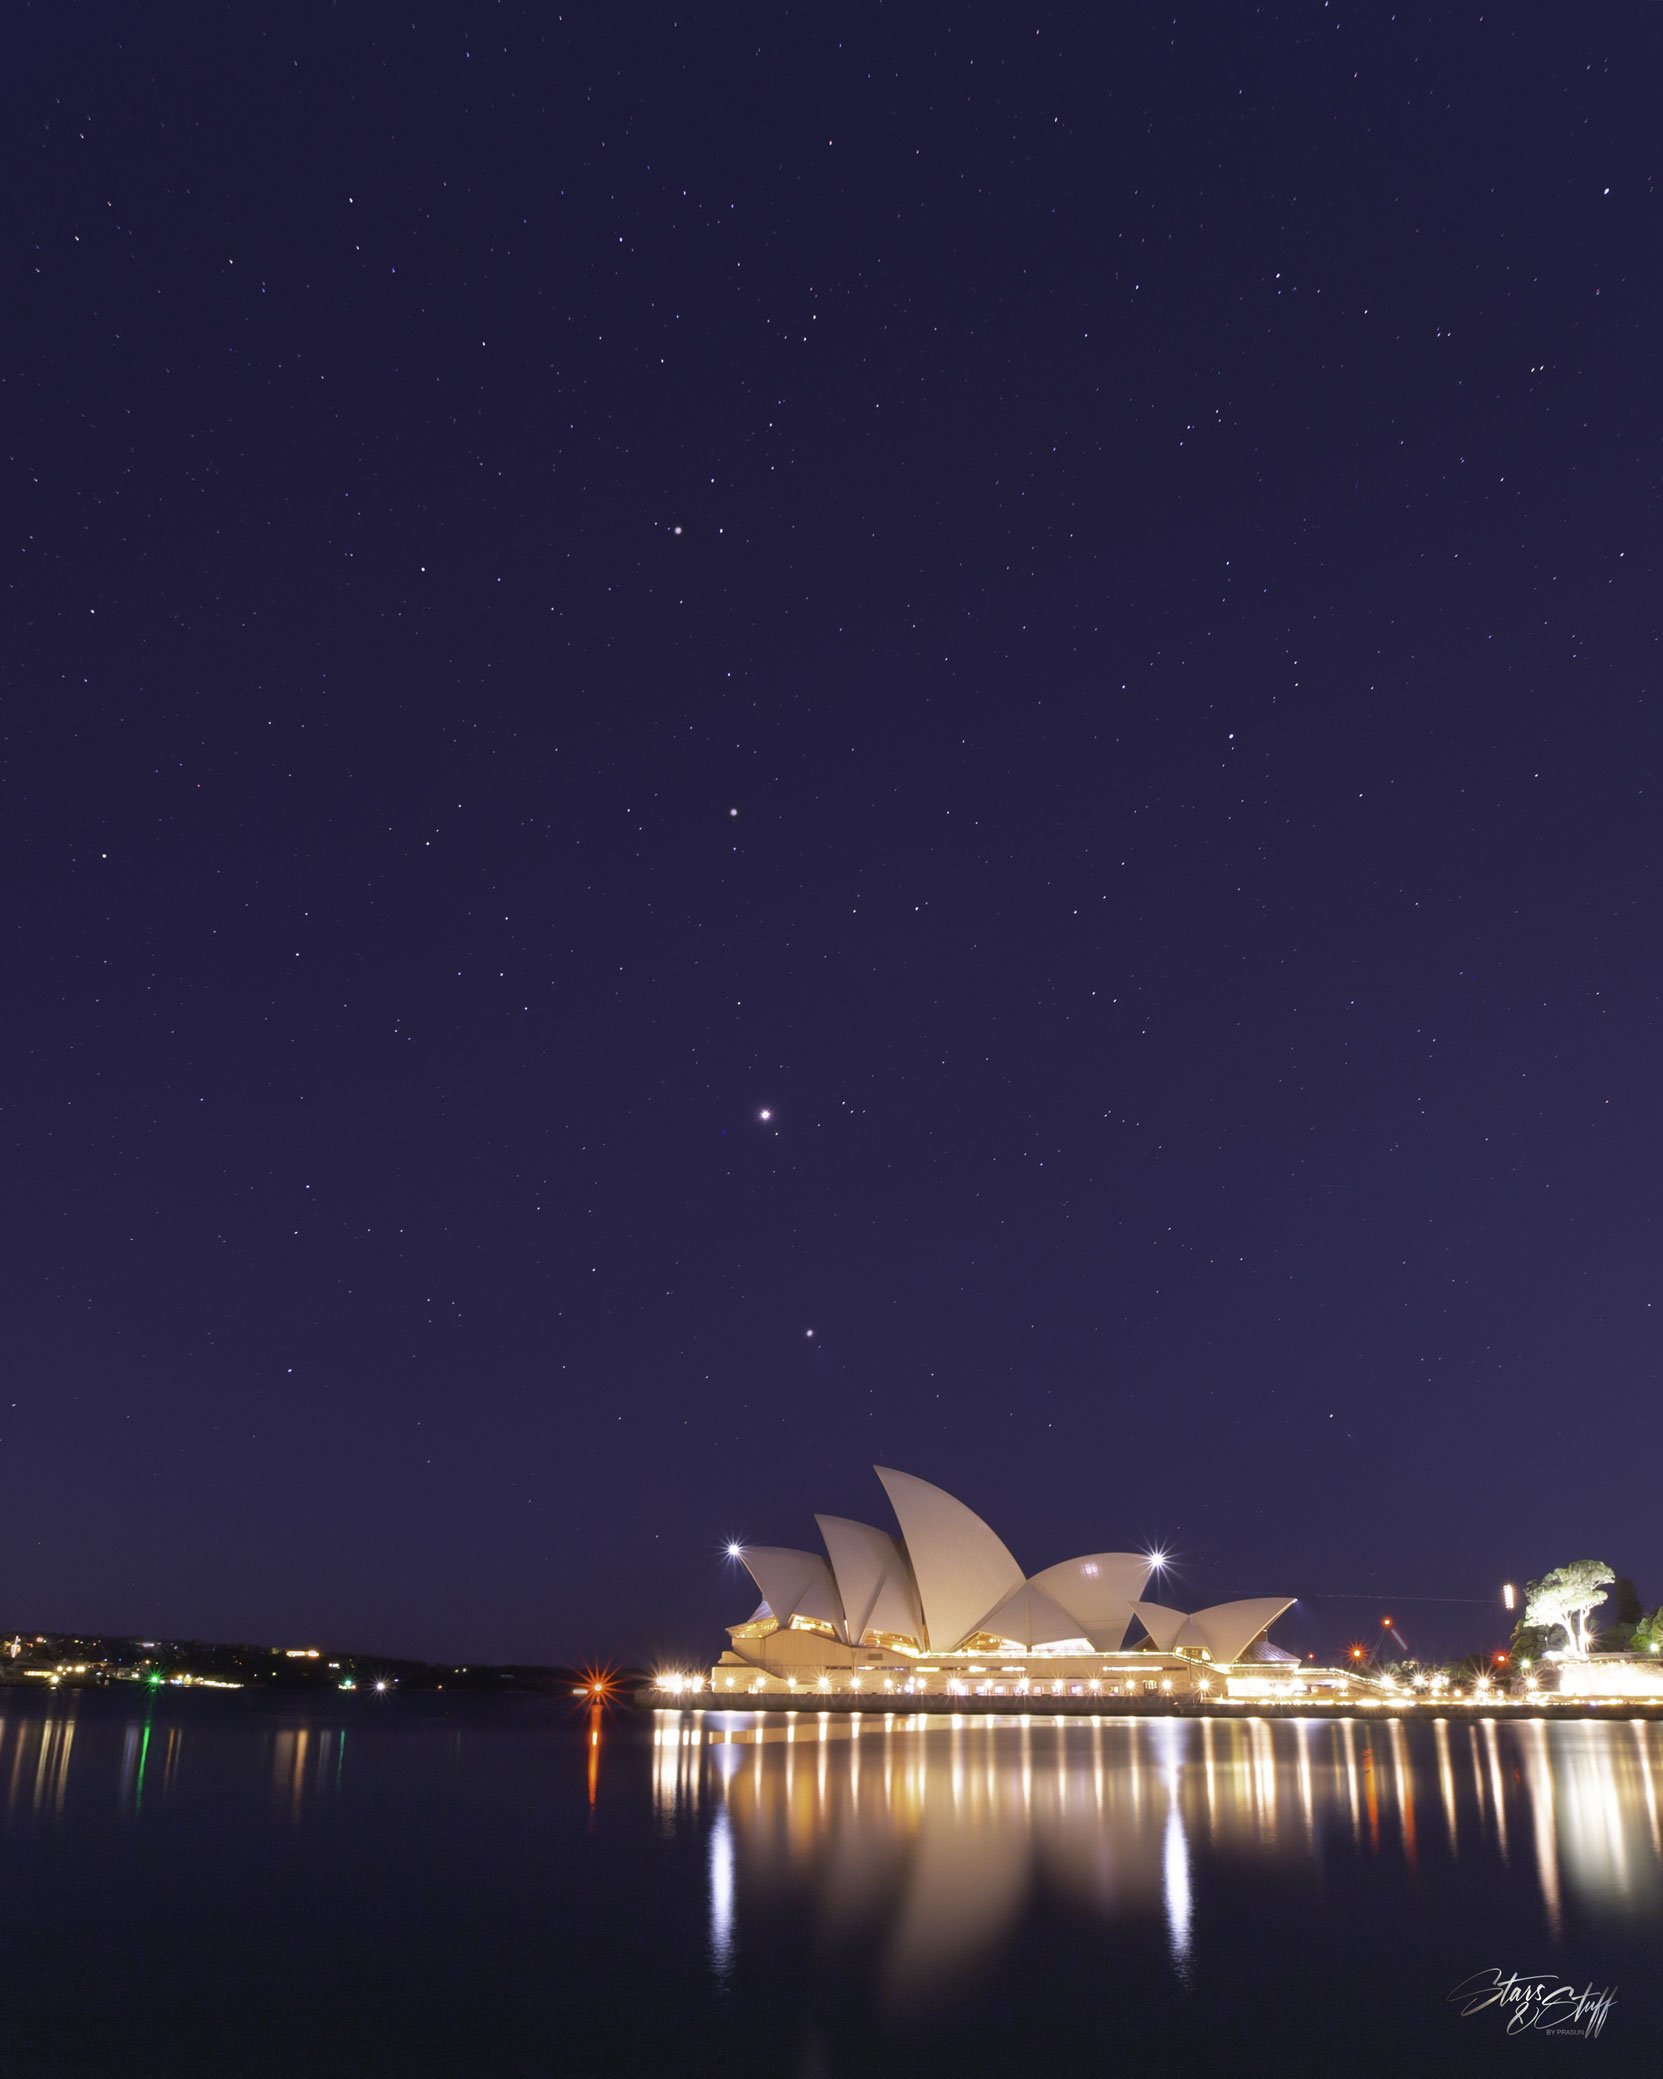 تصویر روز ناسا: سیارات منظومه شمسی بر فراز سالن اپرای سیدنی